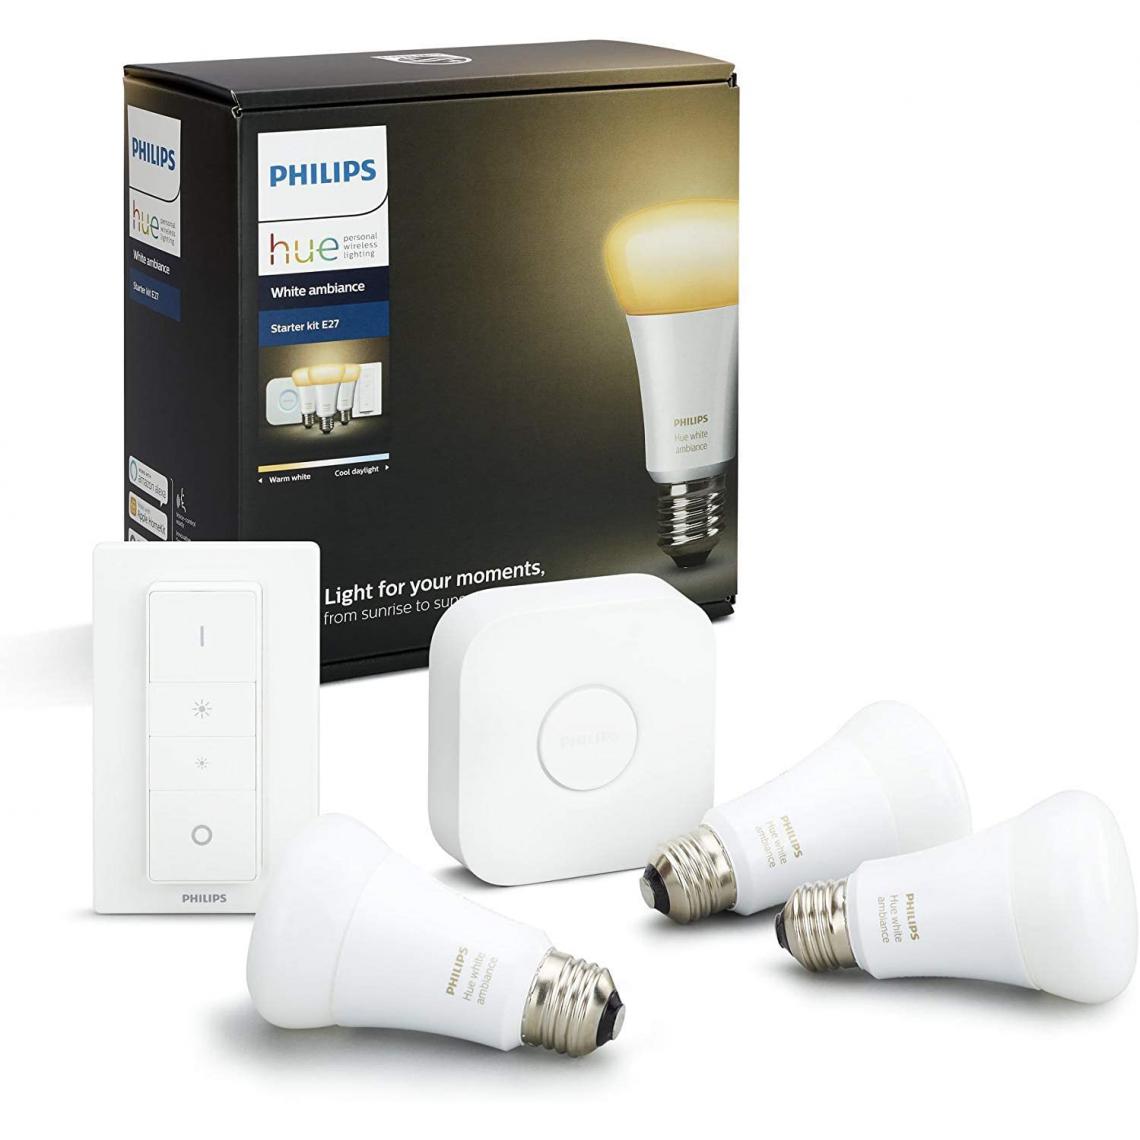 Philips - Kit de démarrage 3 ampoules White Ambiance E27 + pont de connexion et télécommande Hue incluse (Nouveau) 8718696728925 [Classe énergétique A+] - Lampe connectée